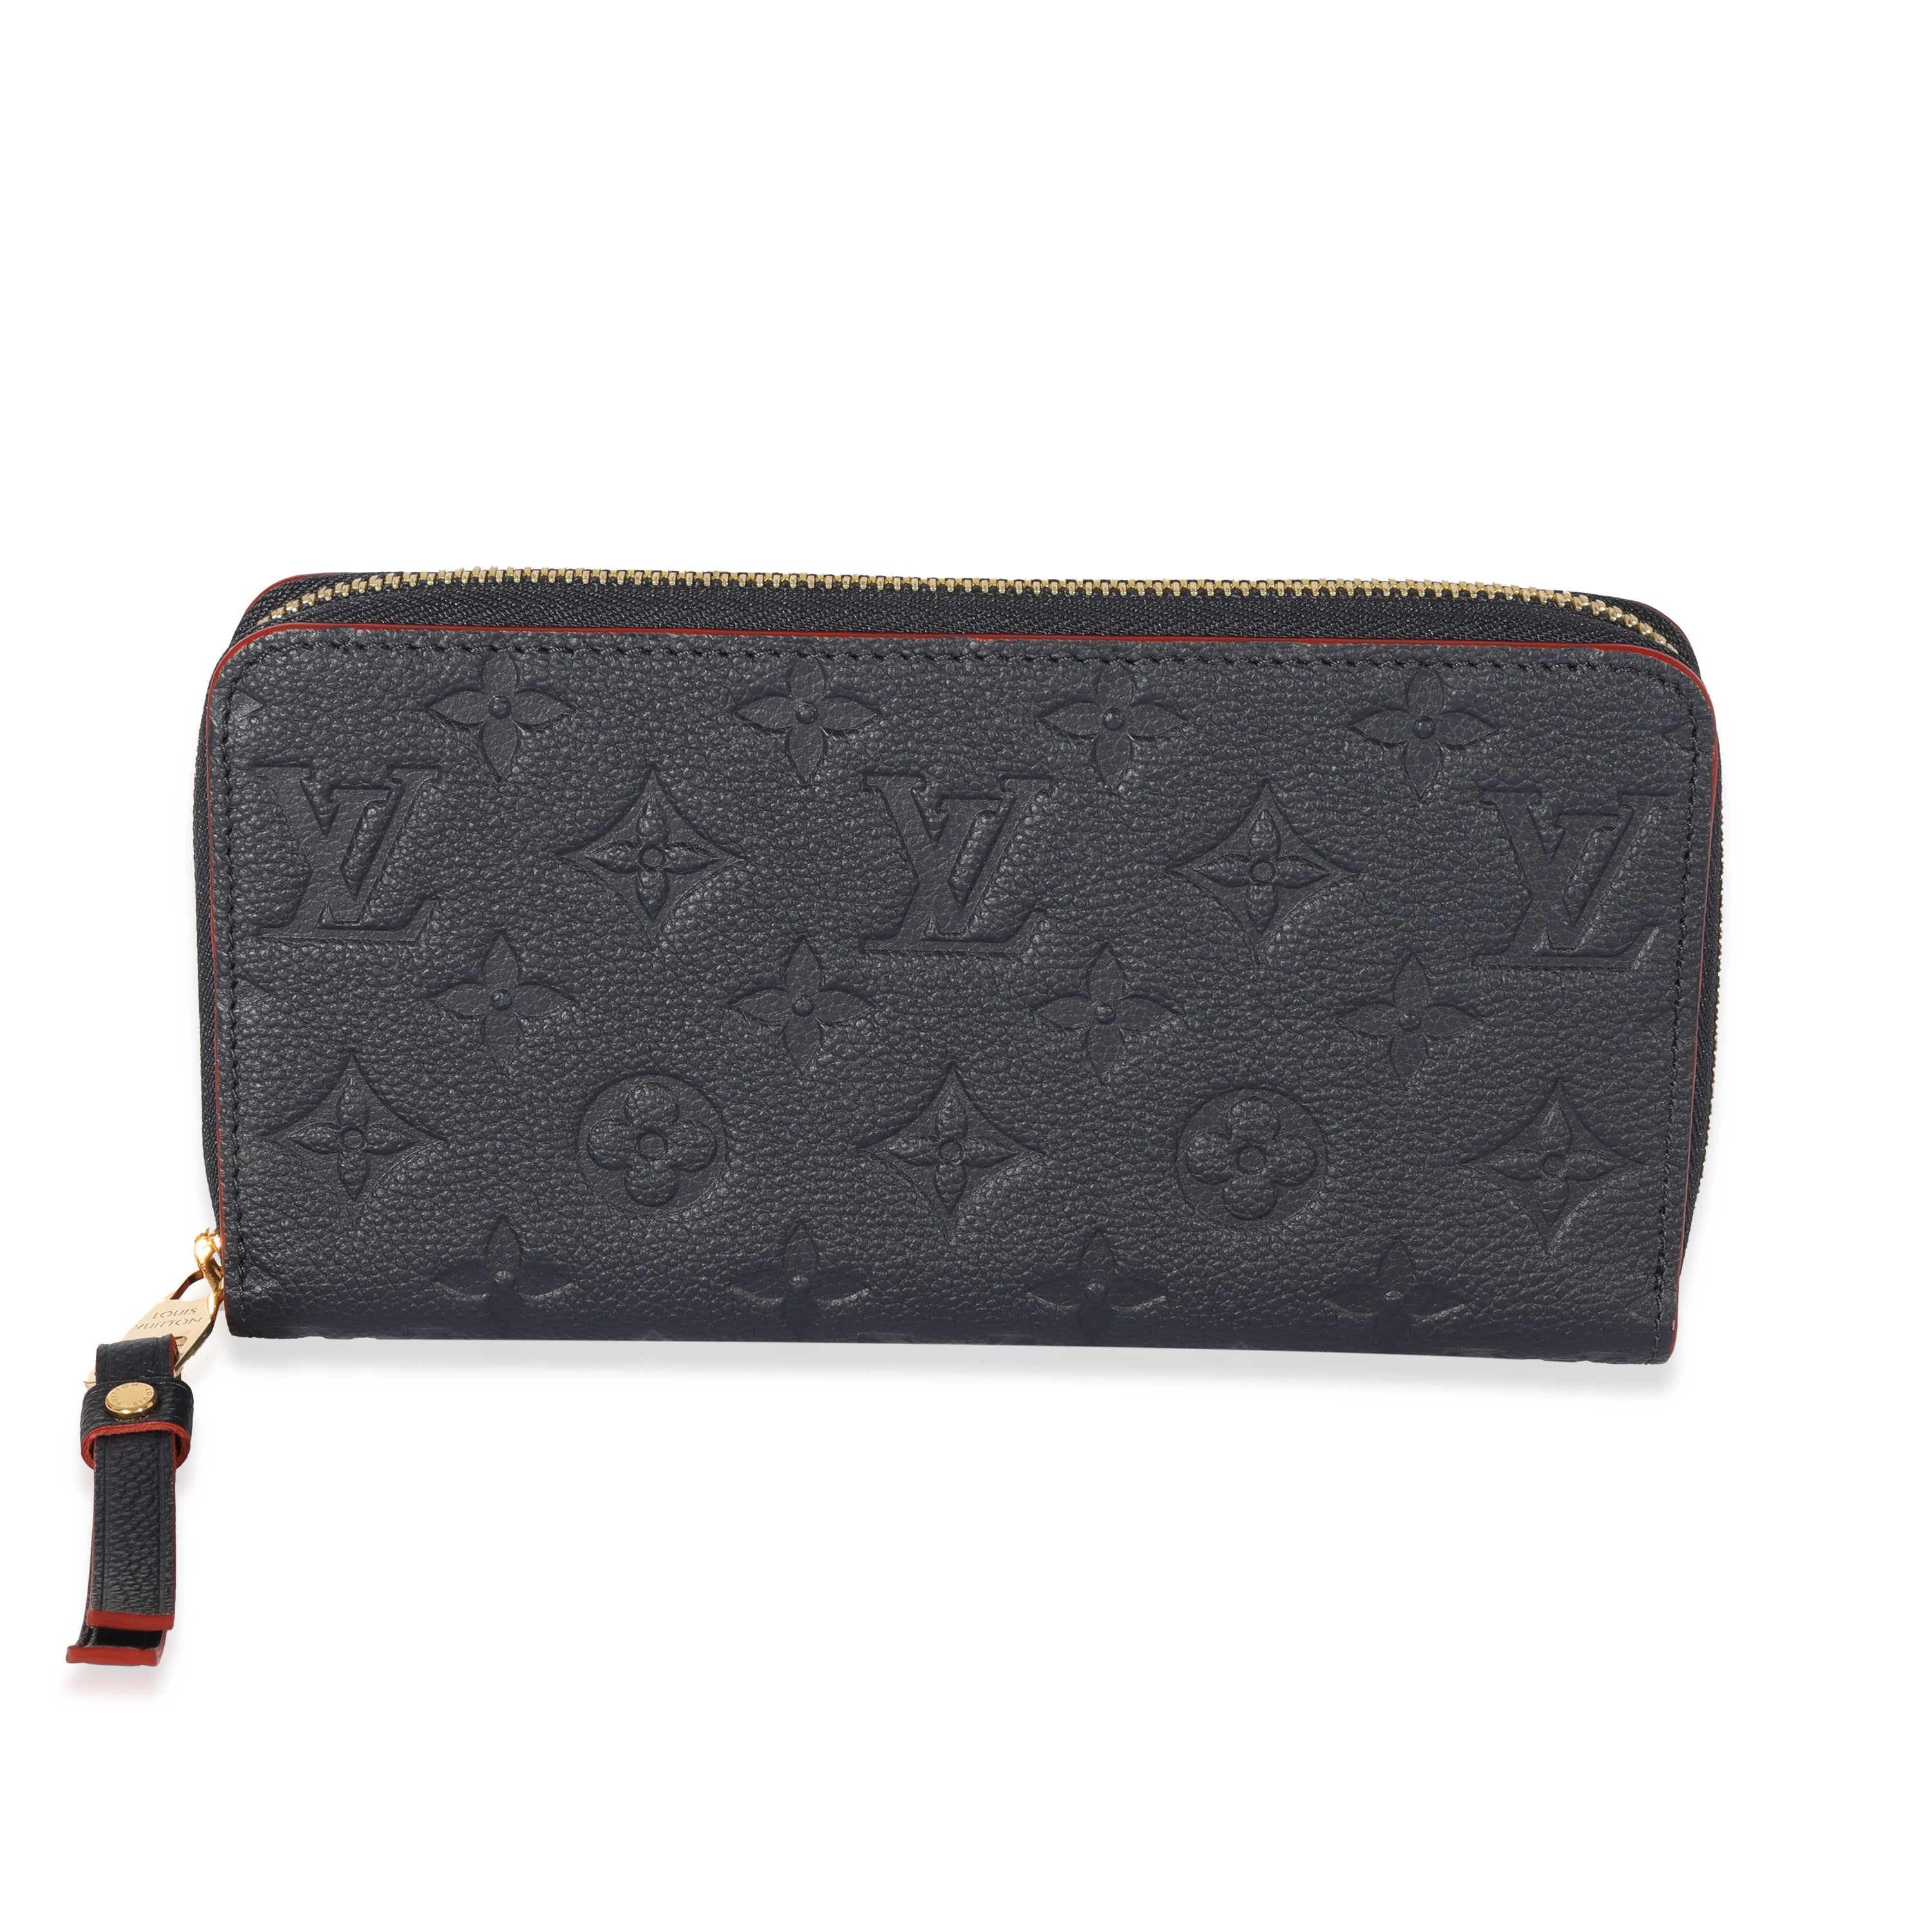 Louis Vuitton Beige Monogram Empreinte Artsy Bag, myGemma, CH